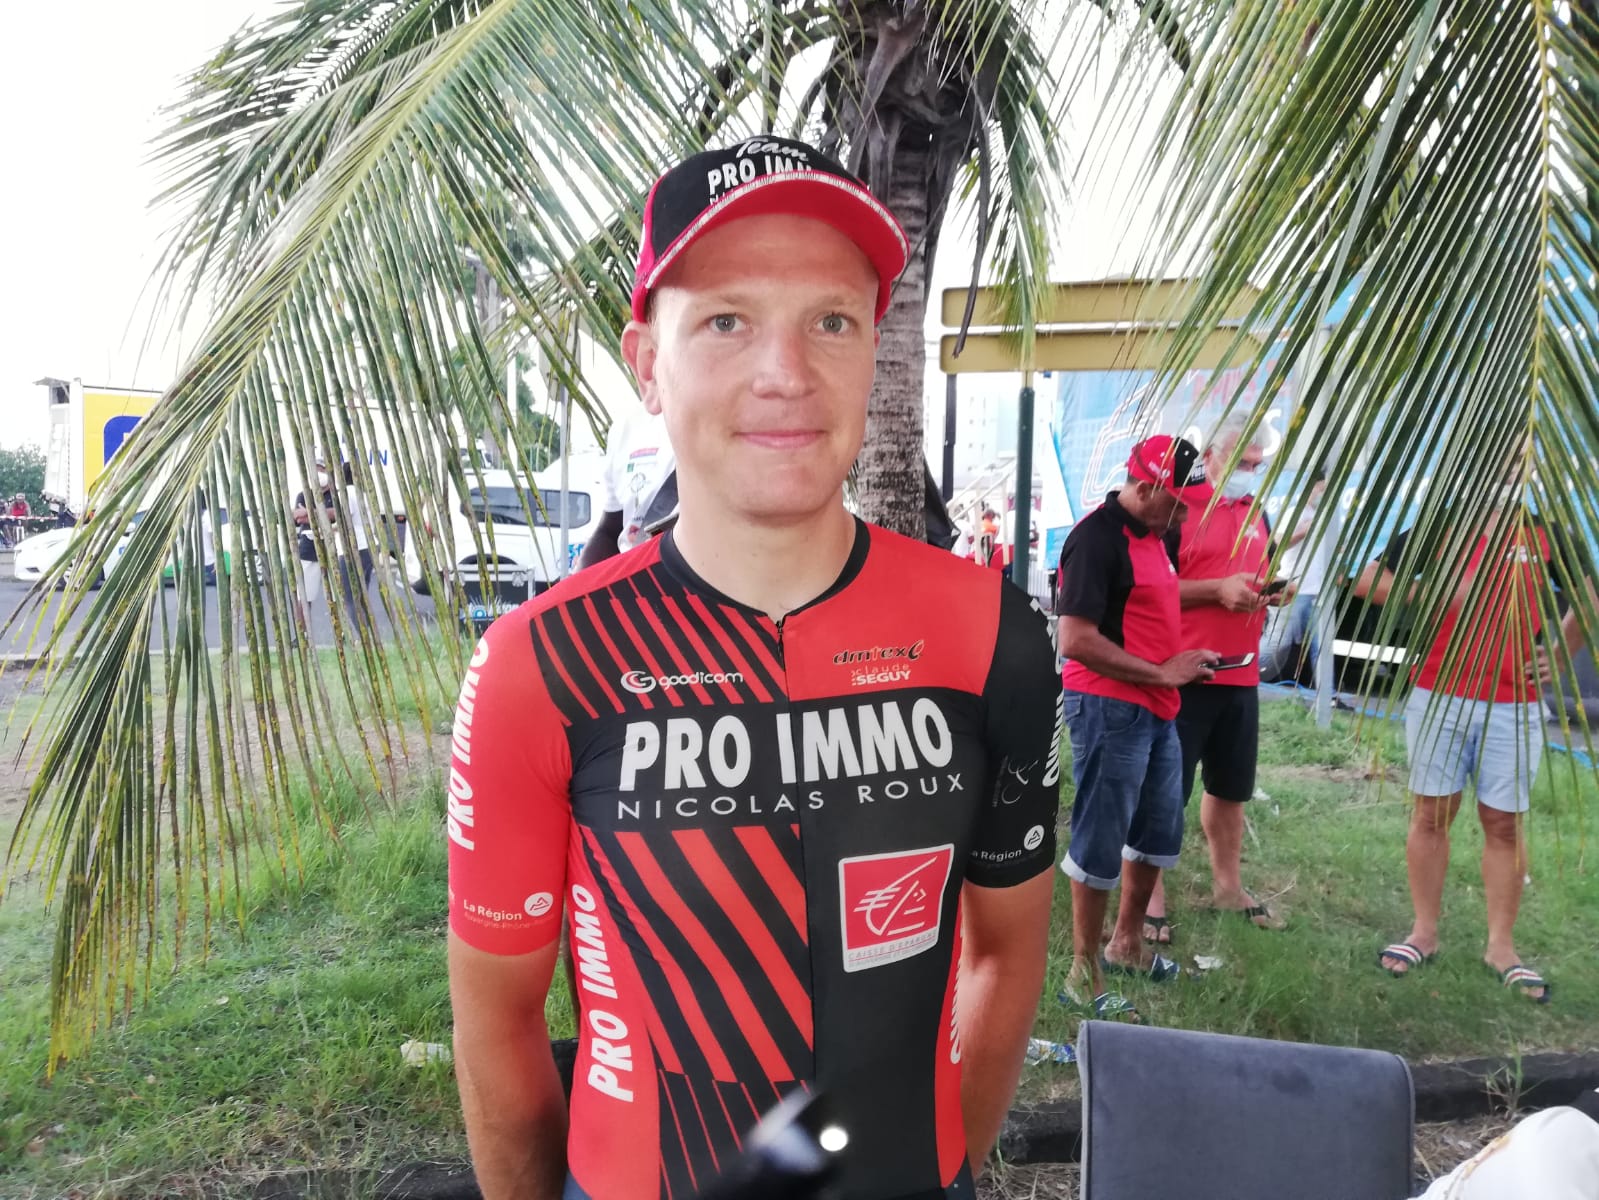     Tour cycliste de la Guadeloupe : Mickaël Guichard remporte le prologue

